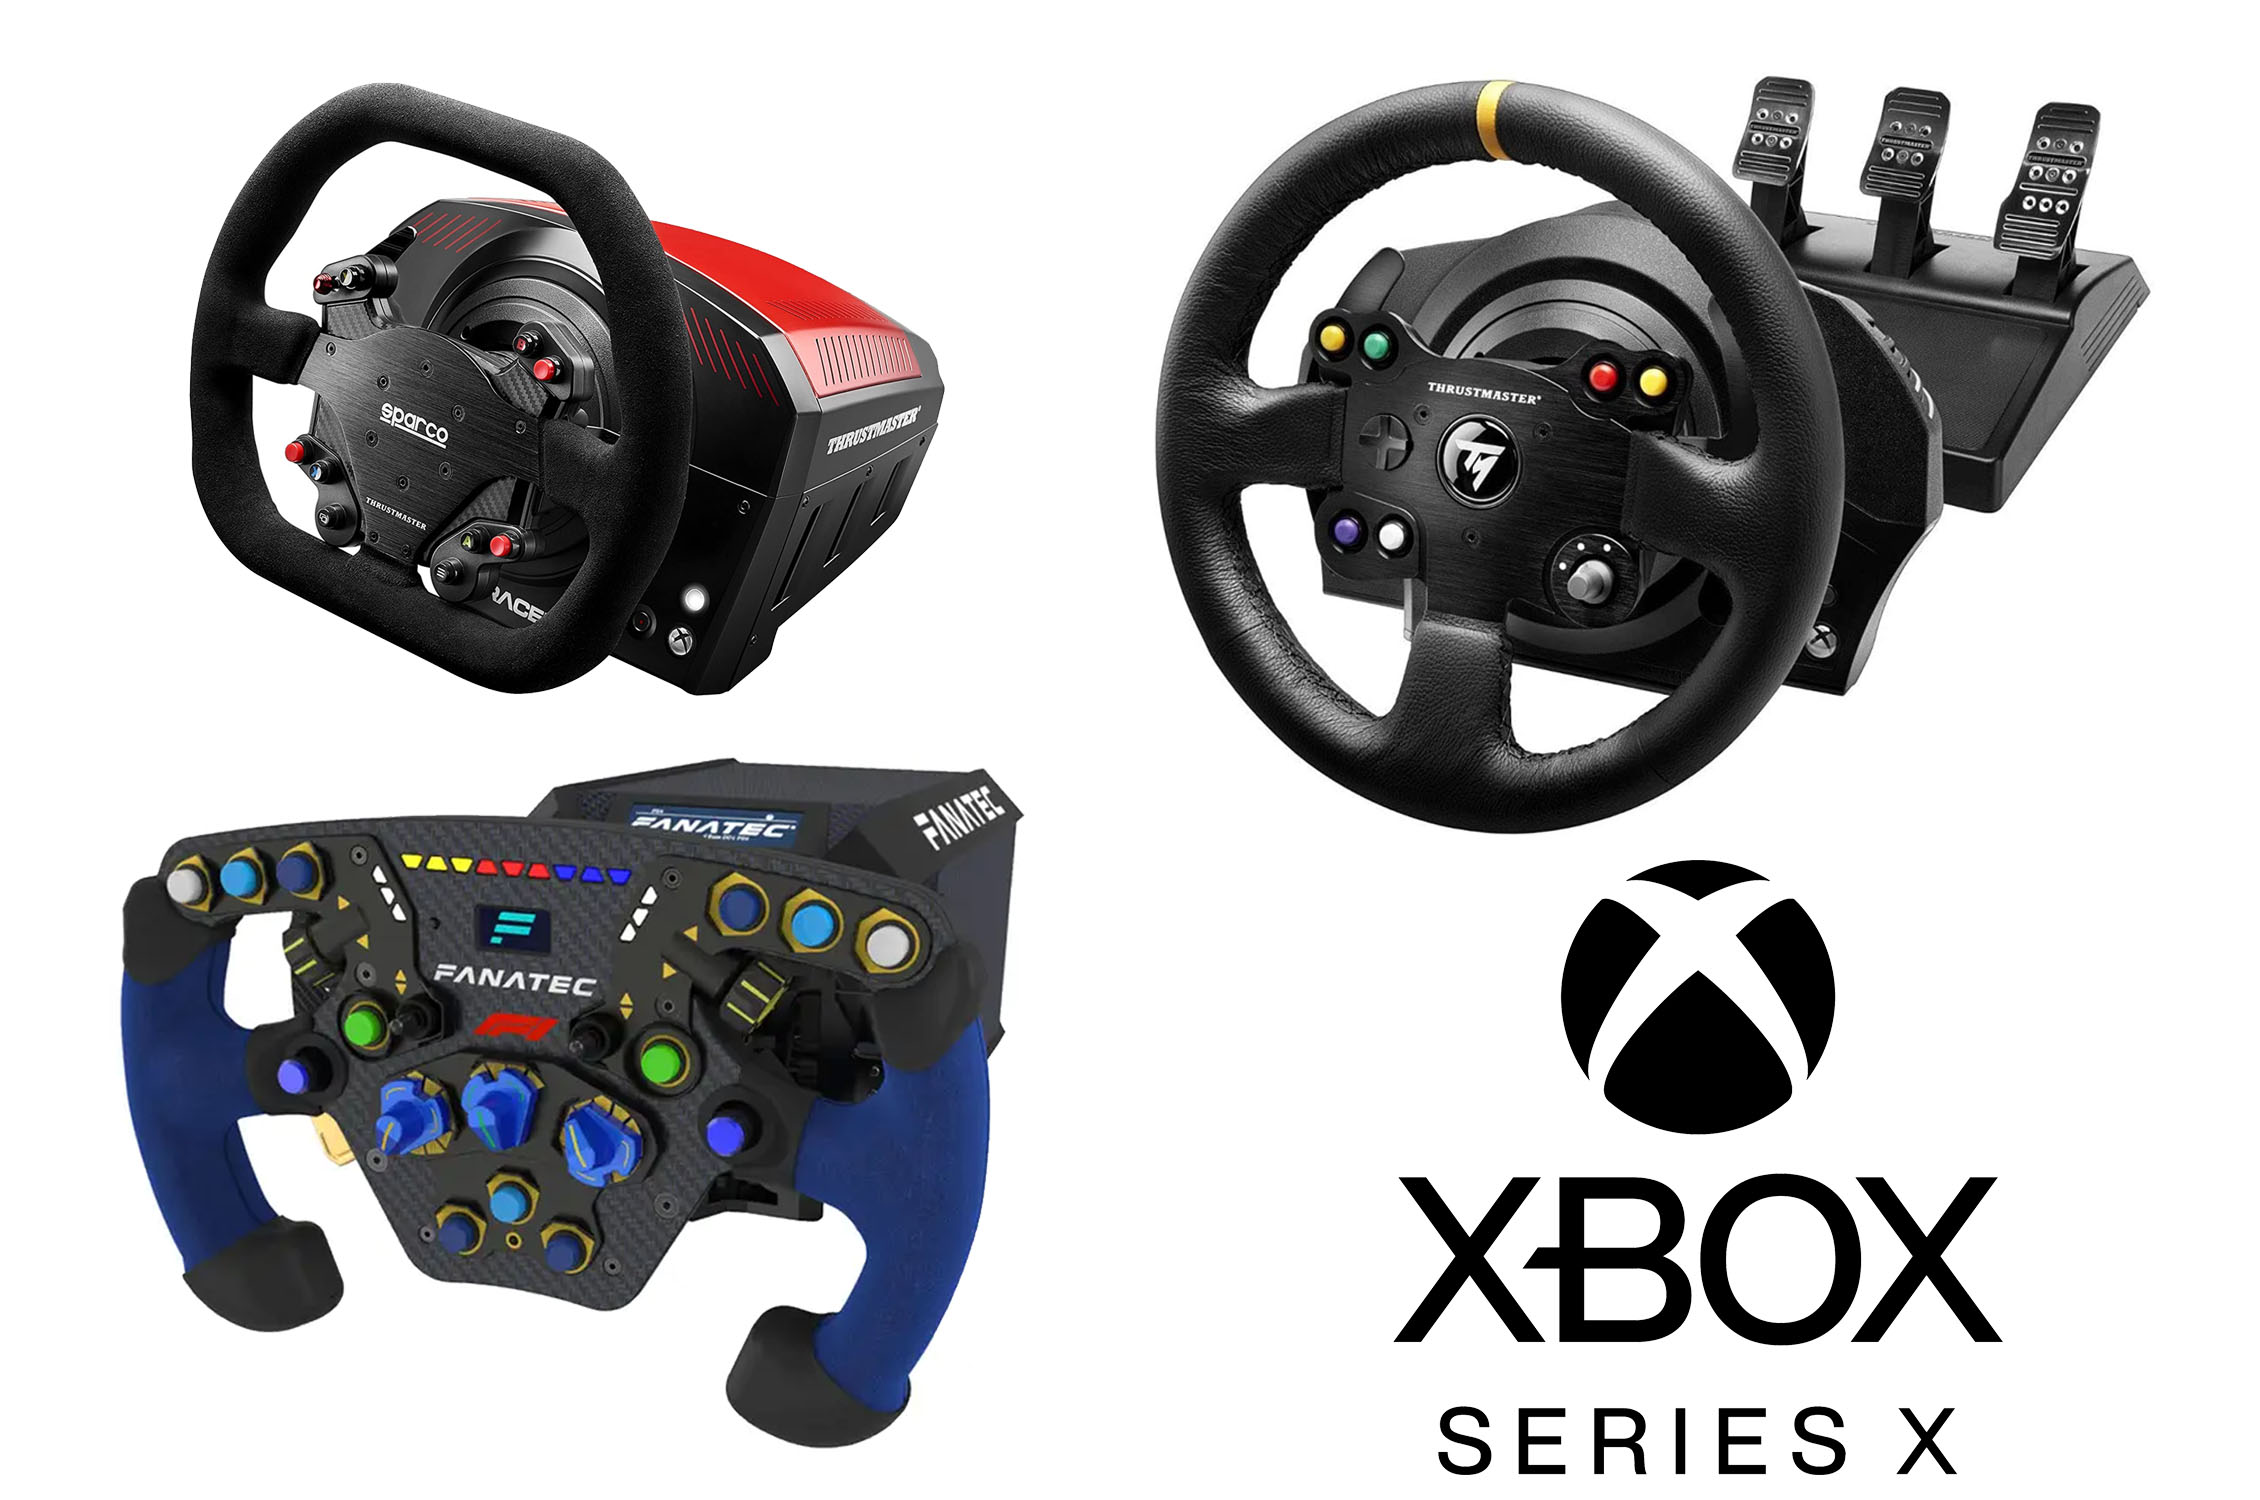 Forza Motorsport: estos son los mejores volantes para jugar la nueva  exclusiva de Xbox